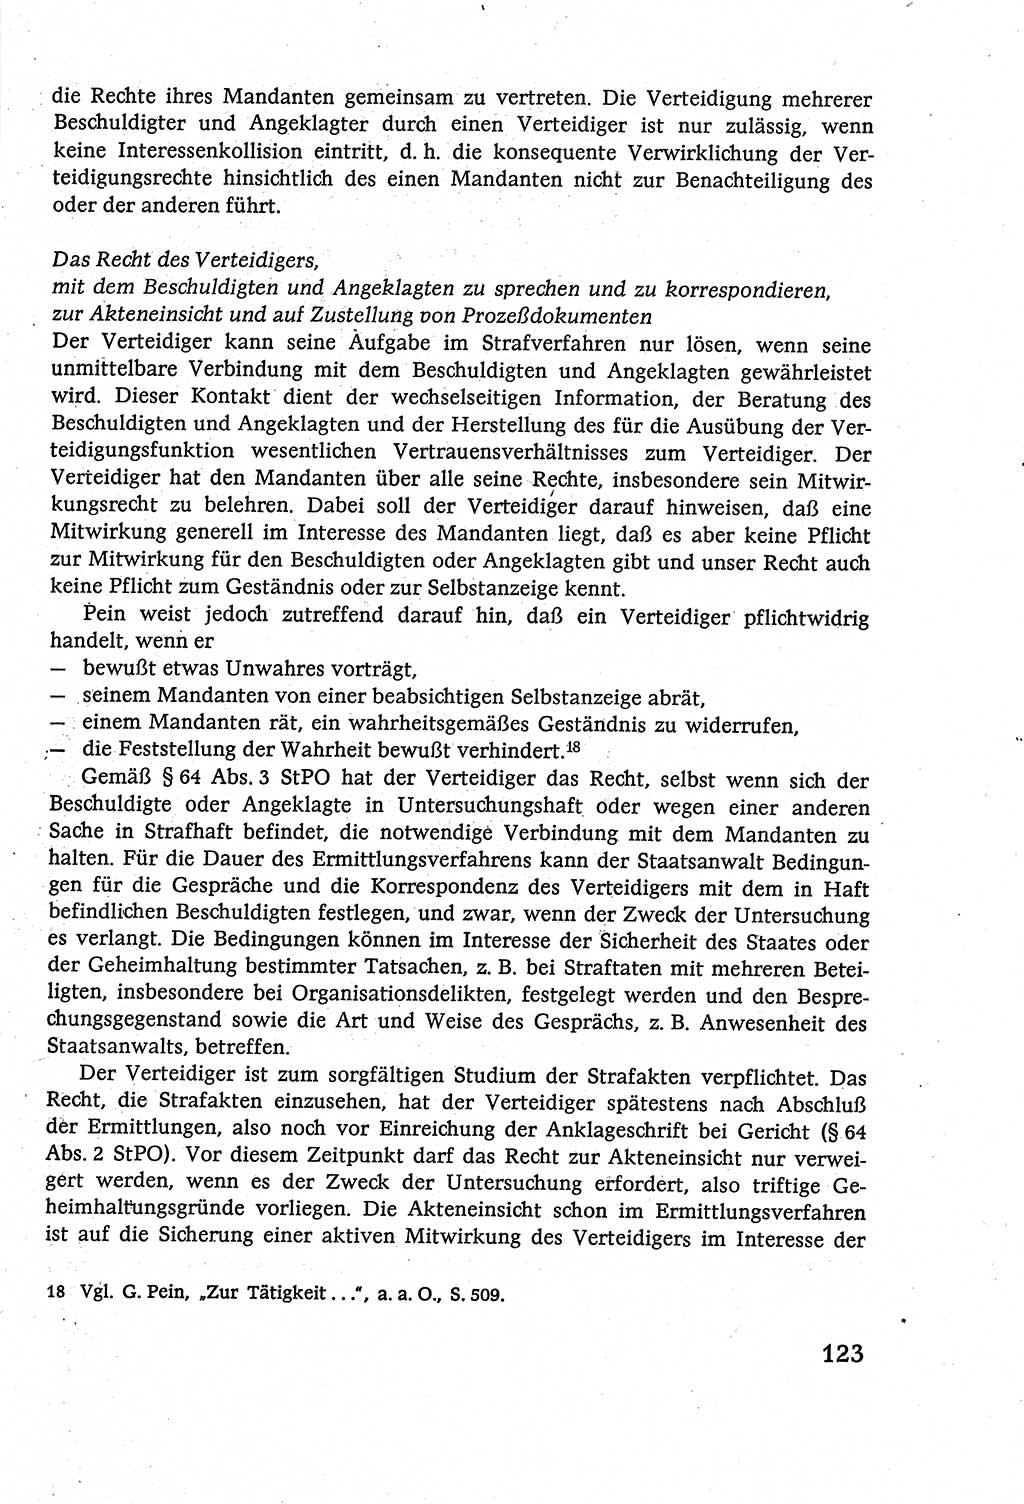 Strafverfahrensrecht [Deutsche Demokratische Republik (DDR)], Lehrbuch 1977, Seite 123 (Strafverf.-R. DDR Lb. 1977, S. 123)